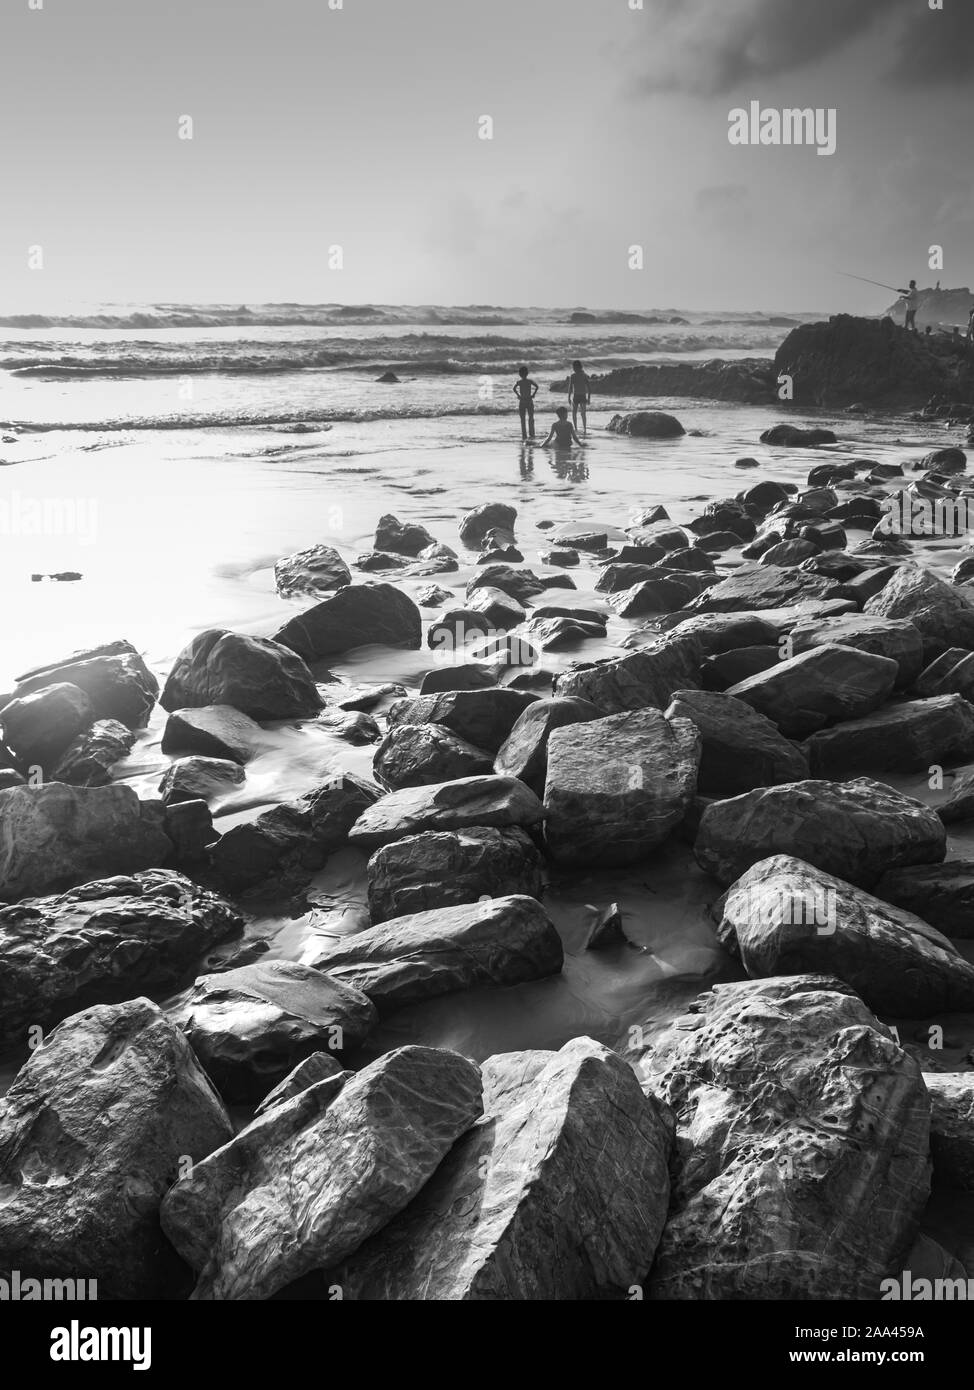 Les enfants jouent dans la mer avec les rochers et Goa en noir et blanc de la mer Banque D'Images